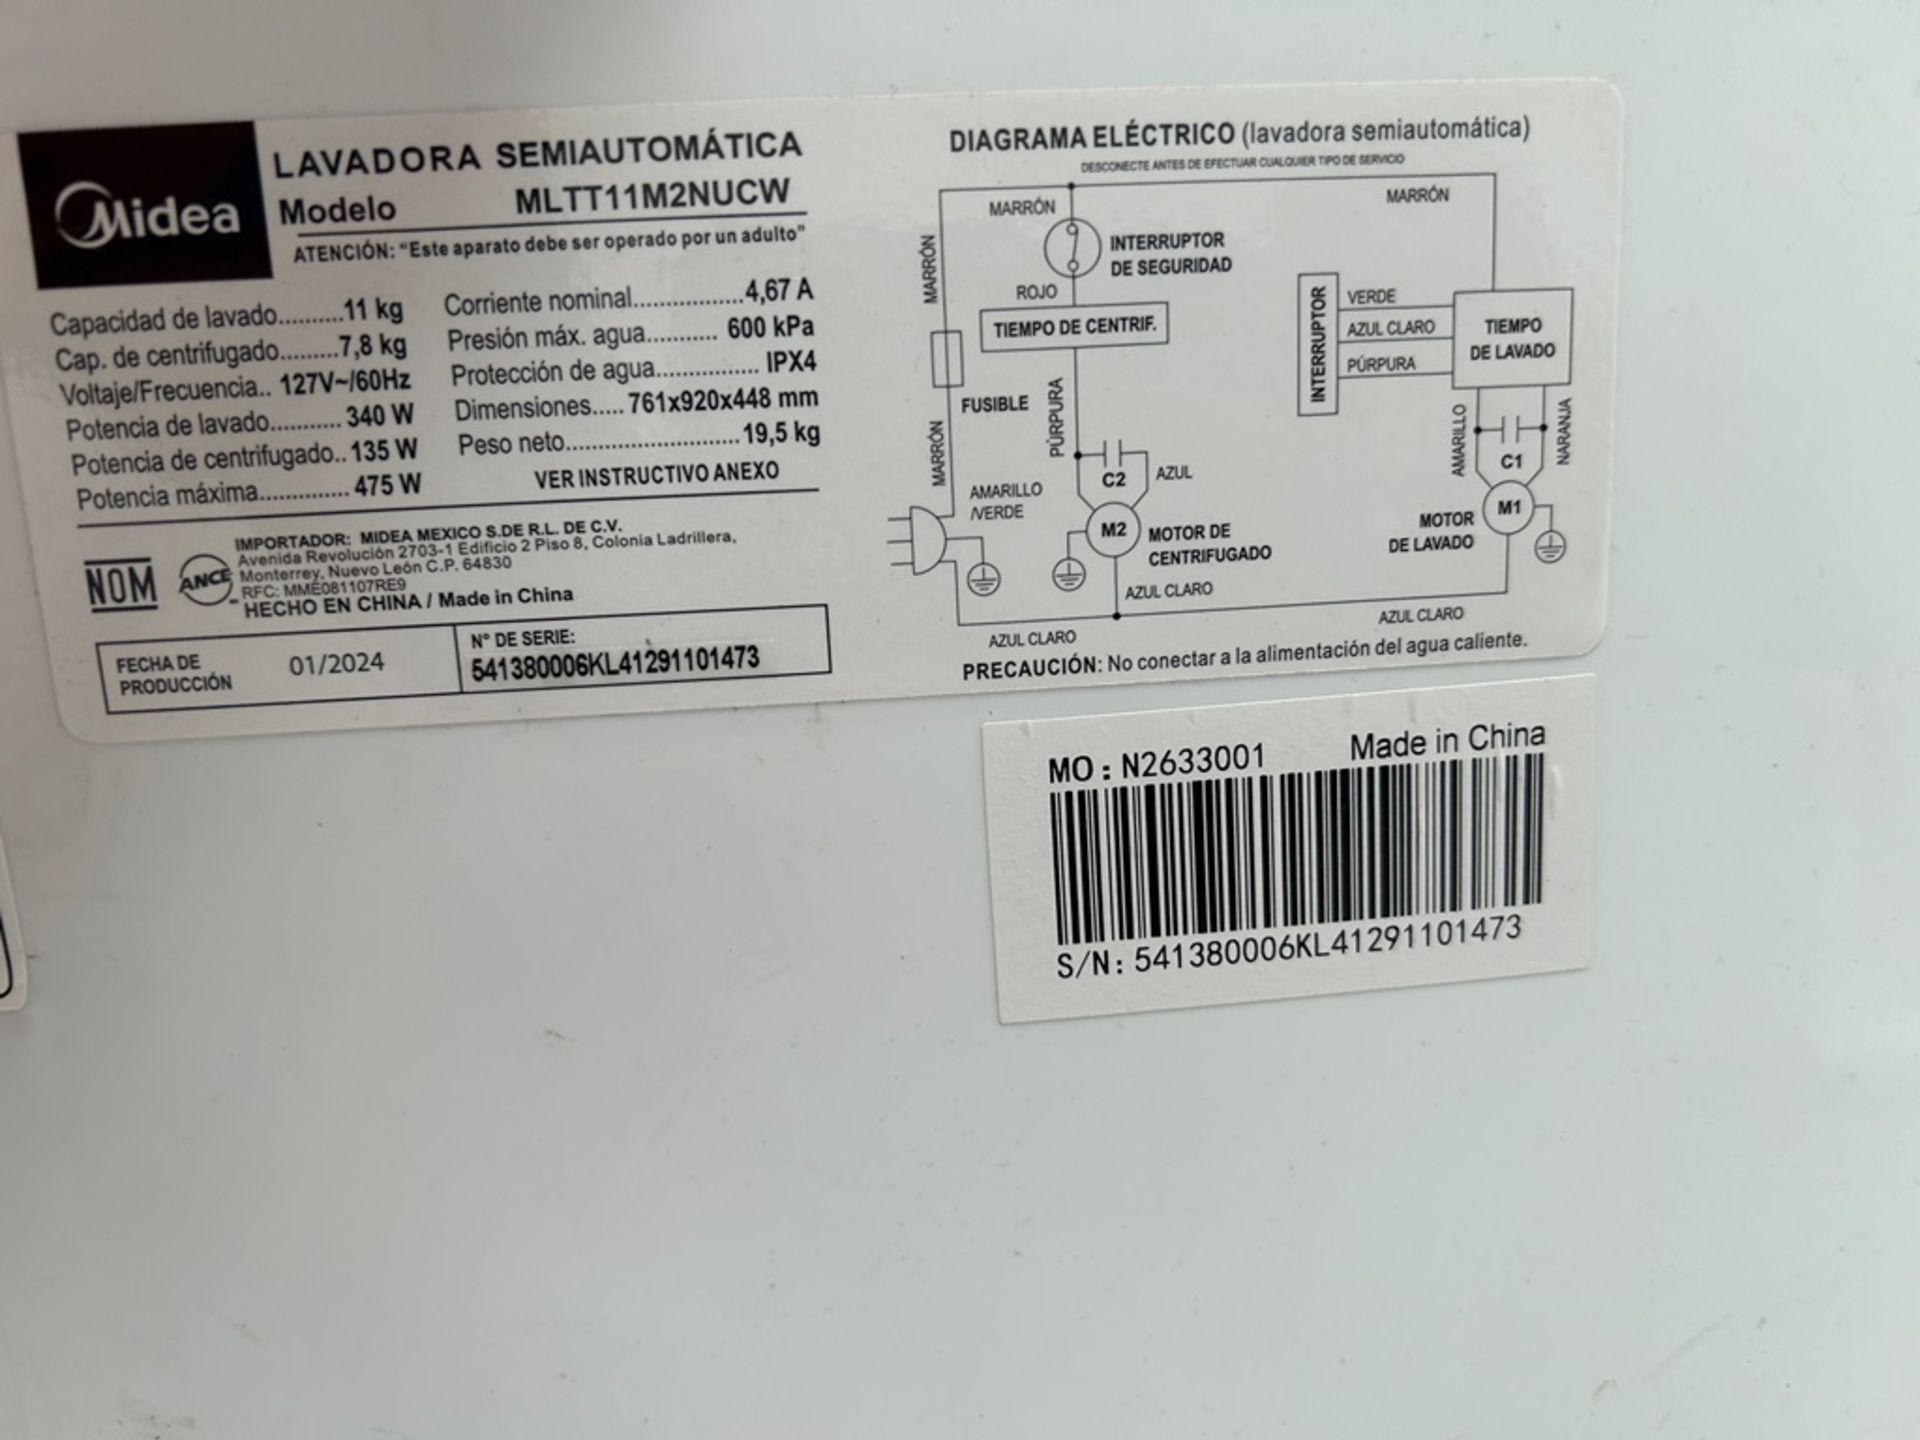 Lote de 3 lavadoras contiene: 1 Lavadora de 21 KG, Marca KOBLENZ, Modelo LRKF21P, Serie 31522, Colo - Image 5 of 13